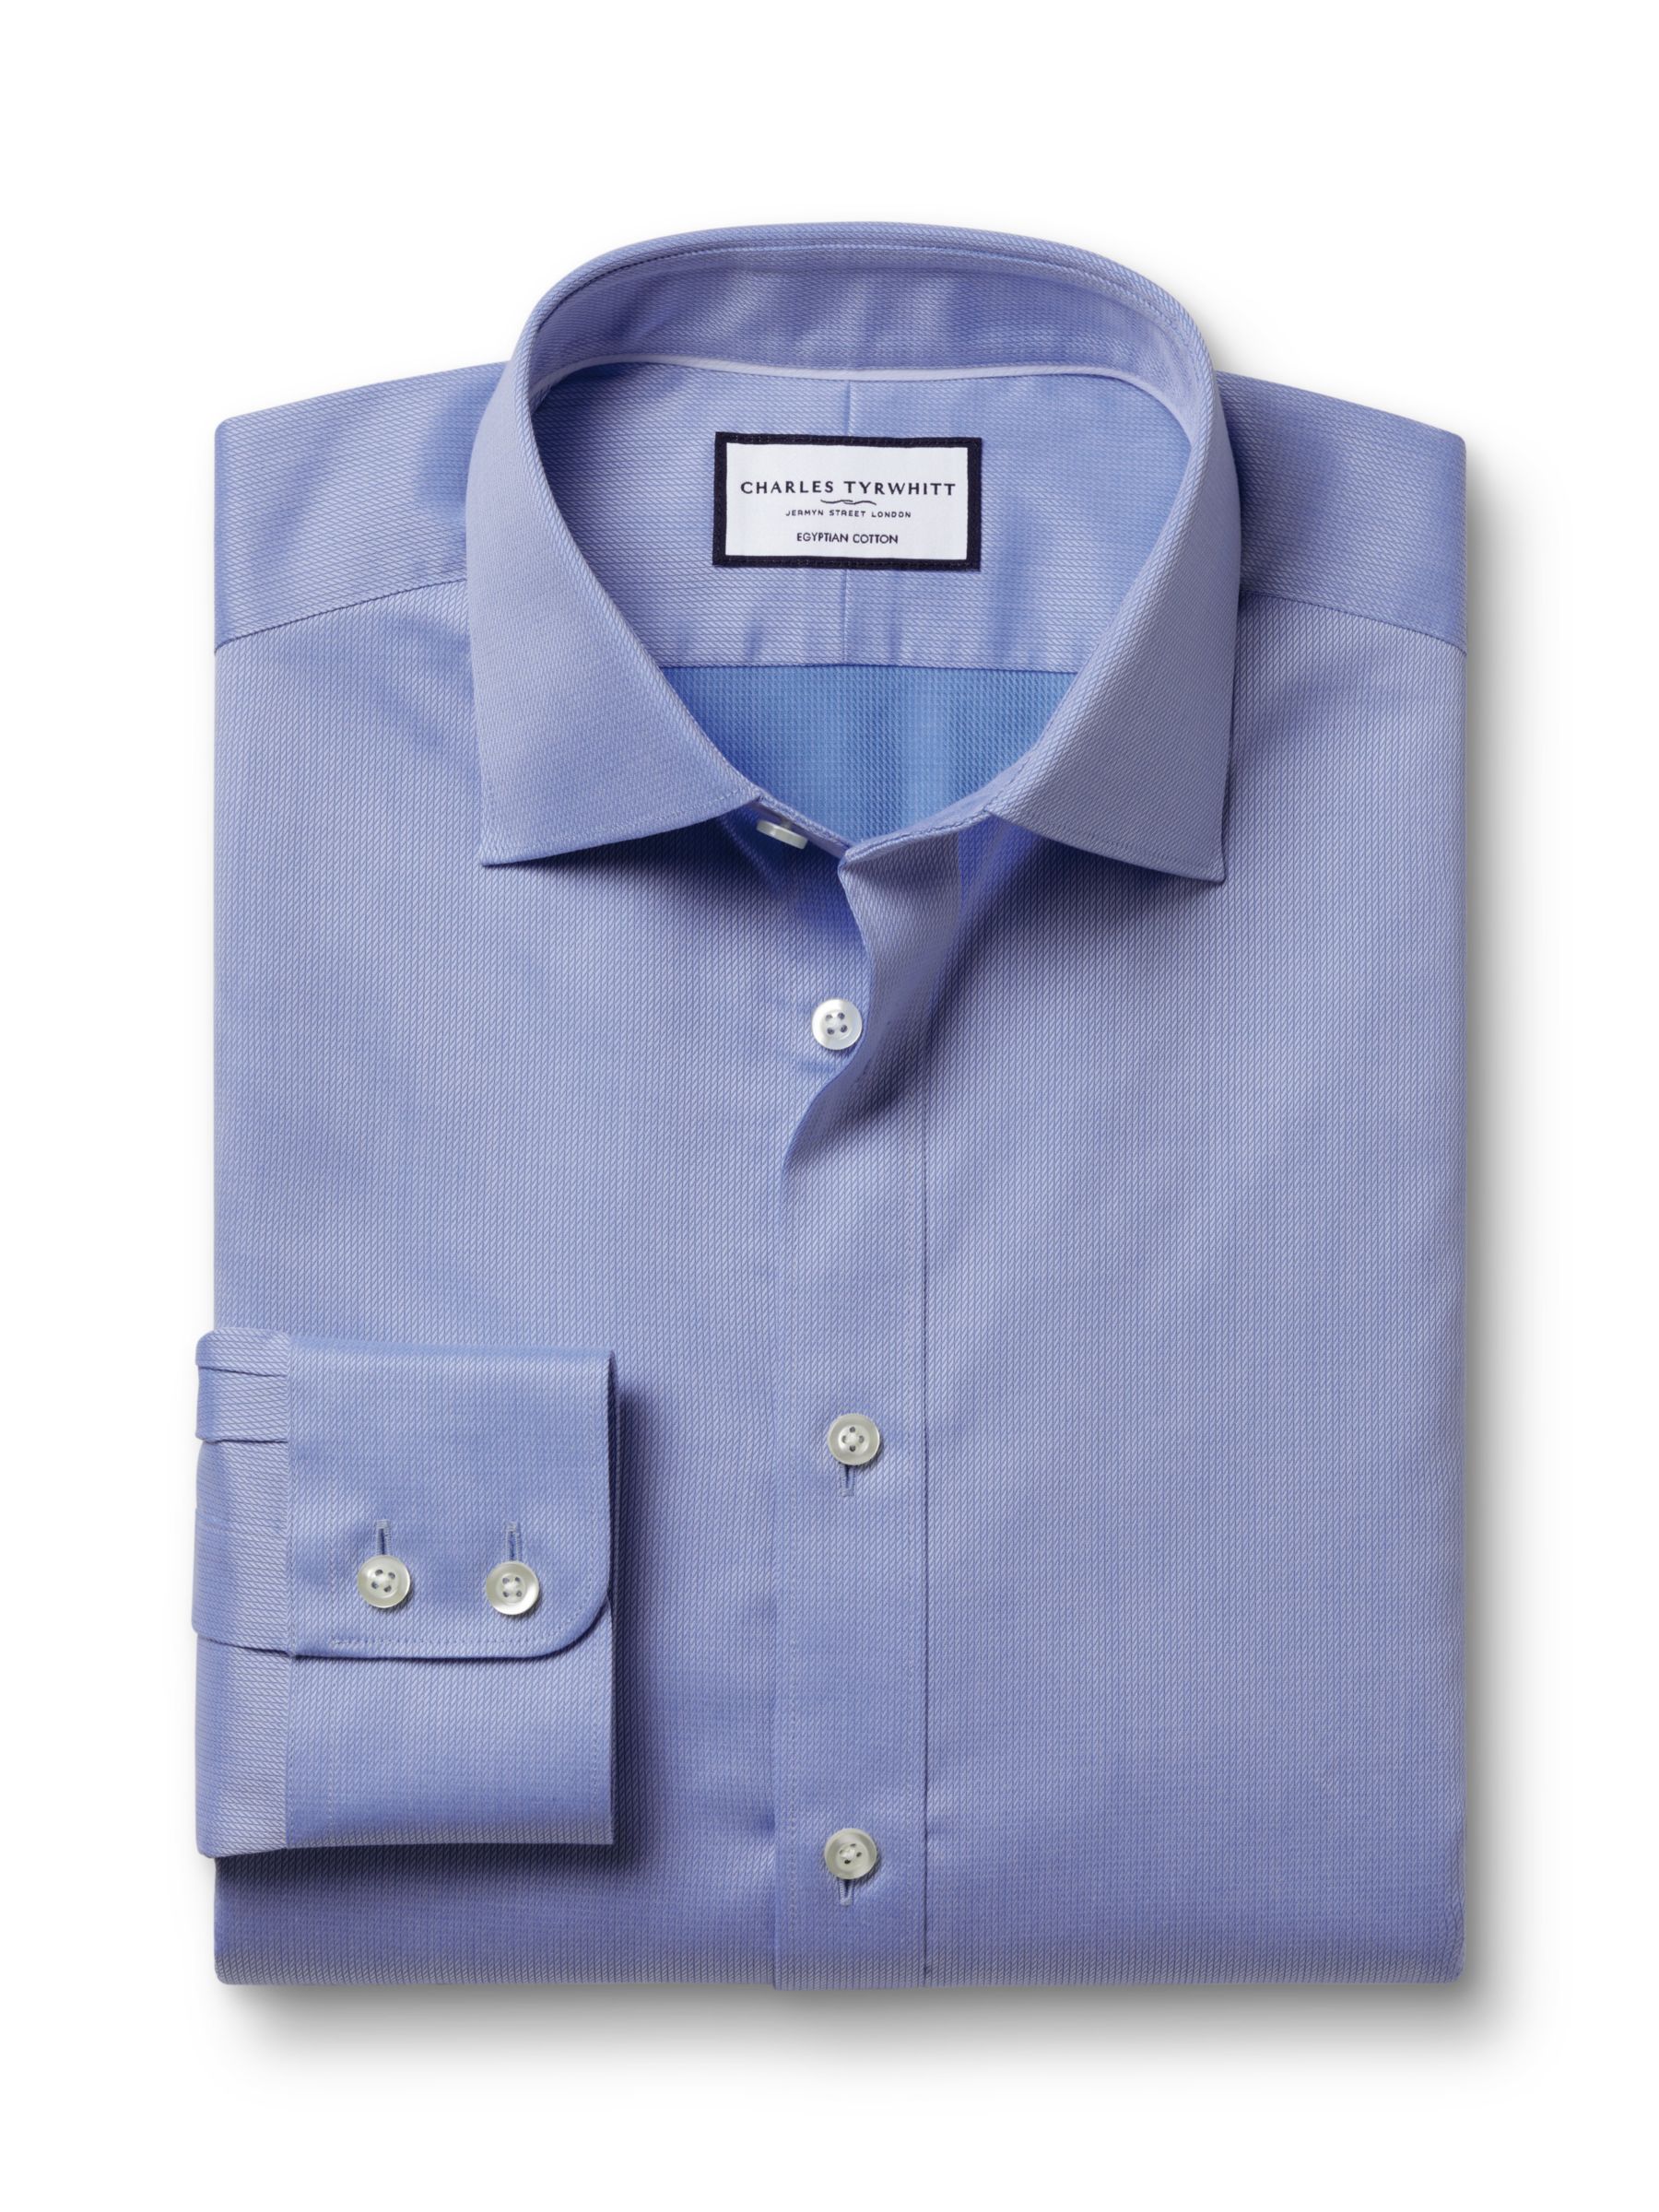 Charles Tyrwhitt Egyptian Cotton Windsor Dobby Weave Shirt, Cornflower Blue, 17.5